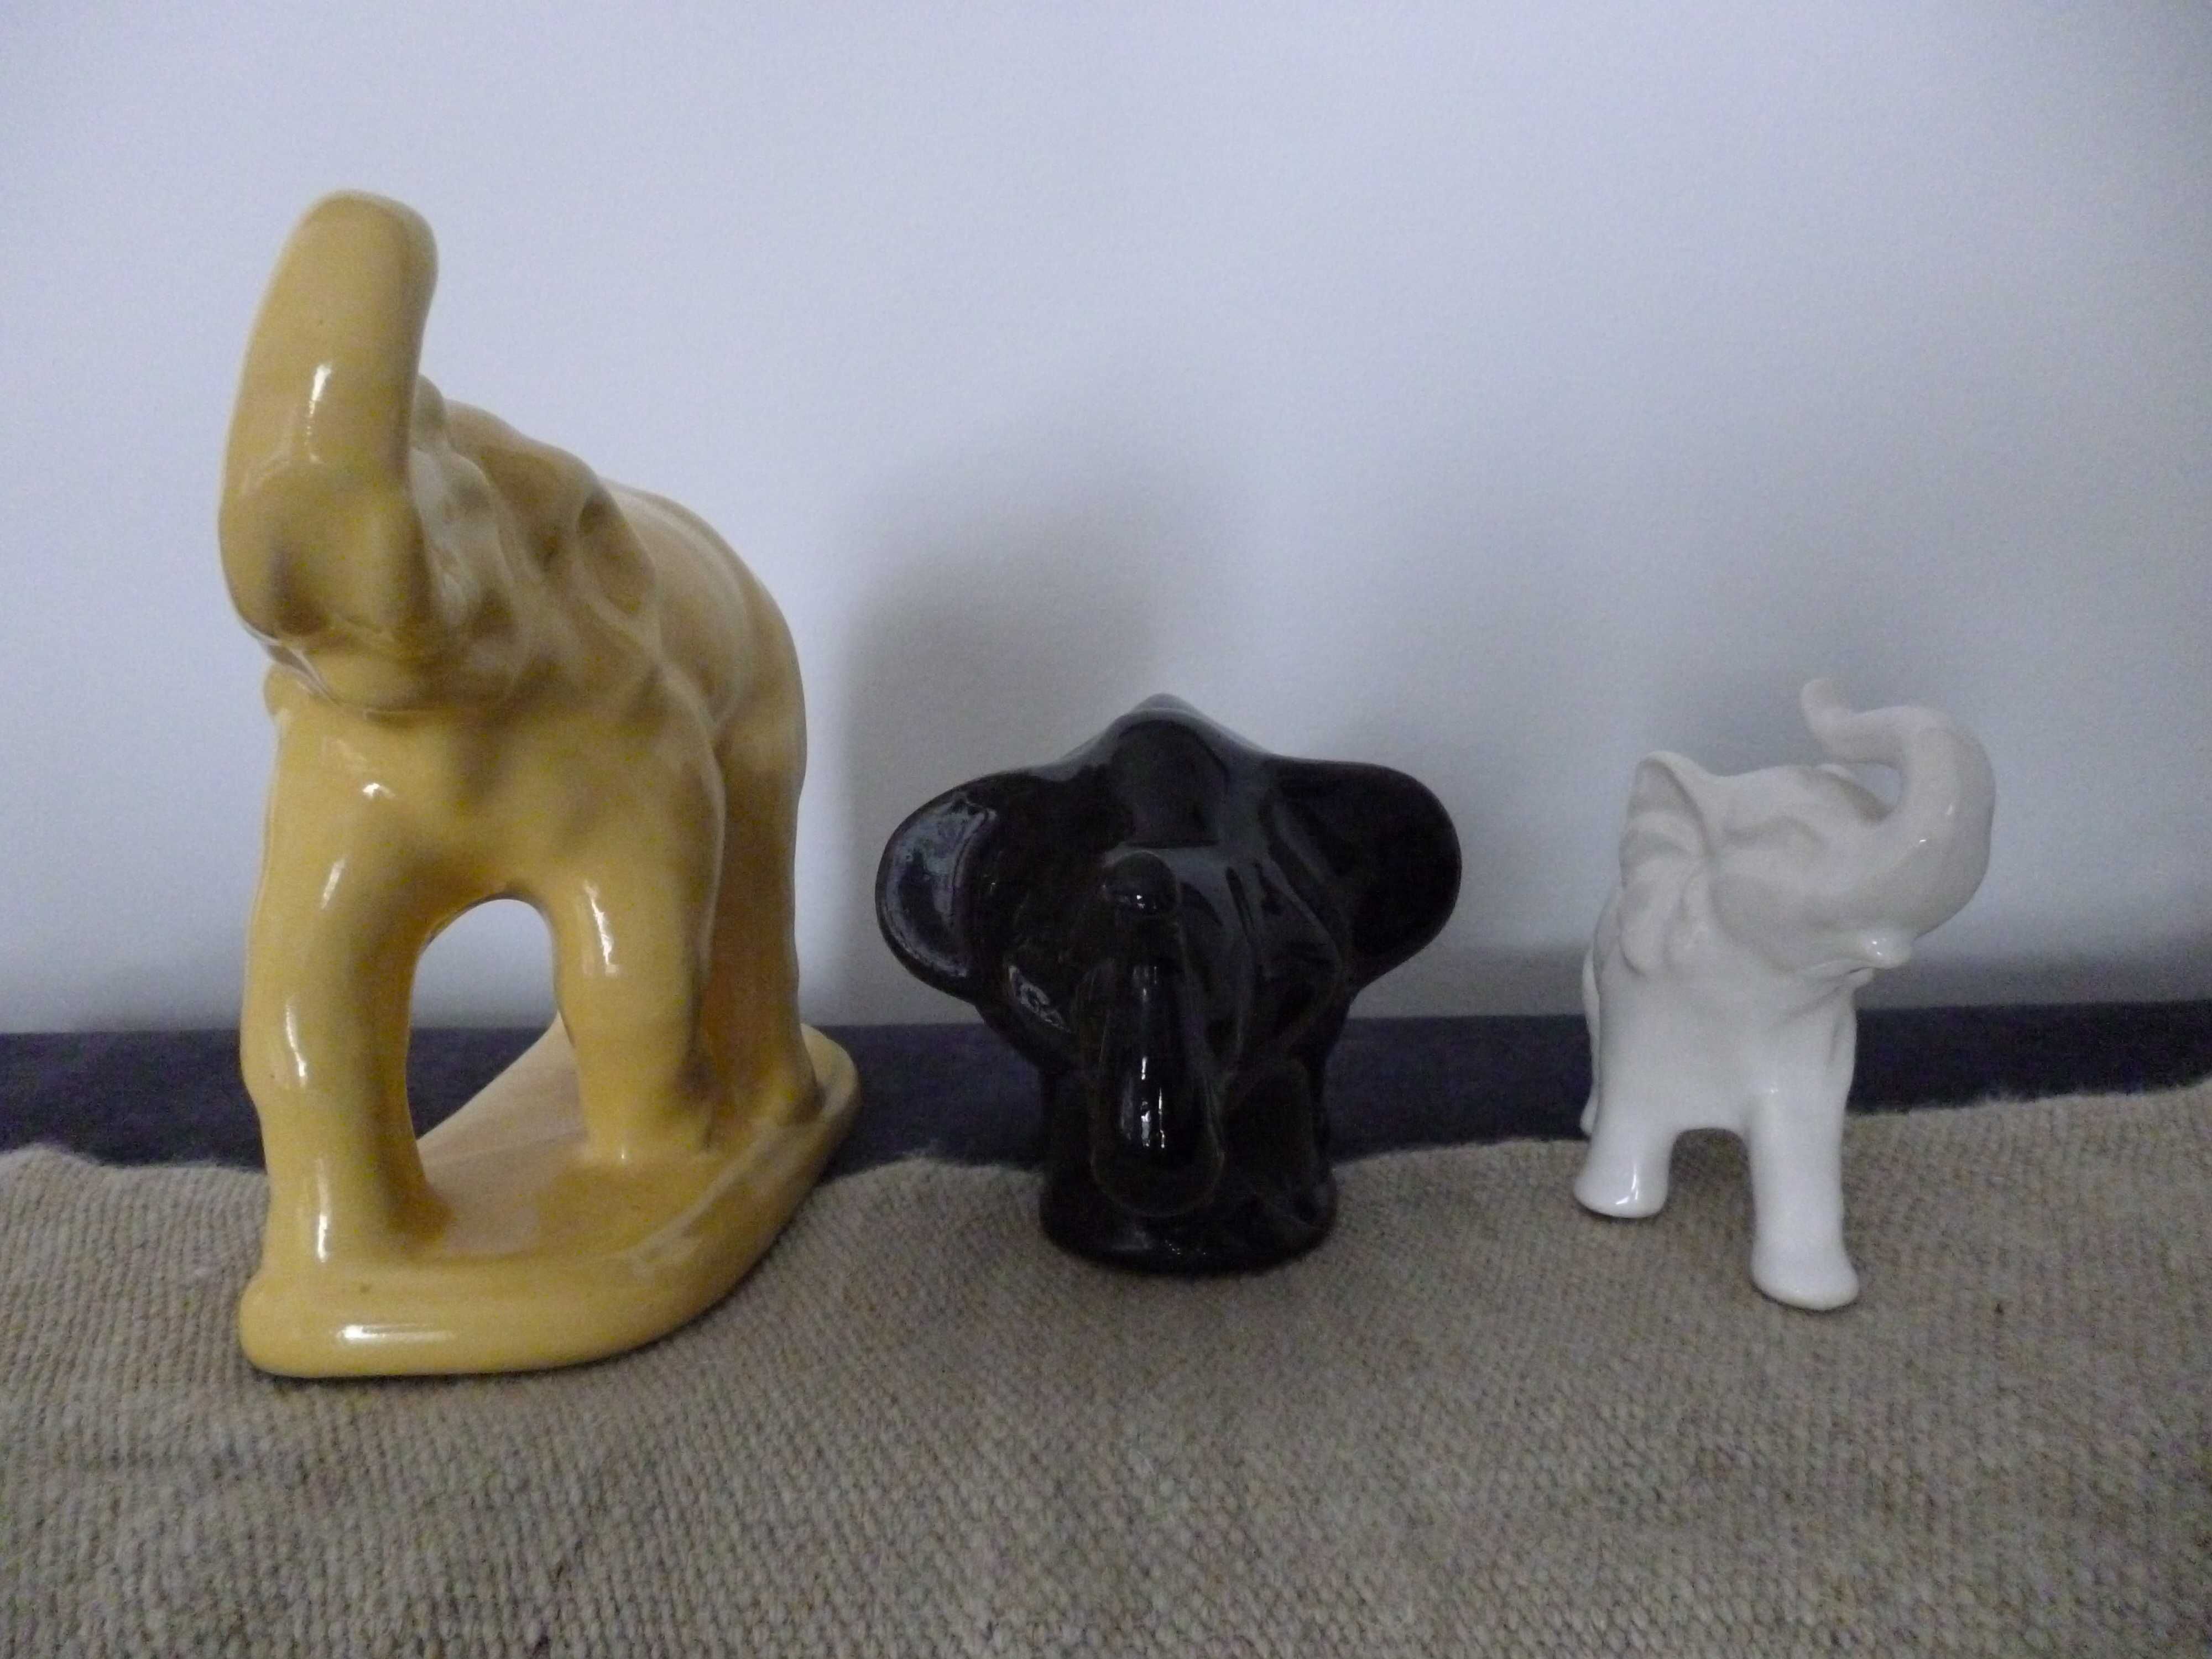 Ceramiczne figurki kolorowe słonie Włocławek w kwiaty 8 sztuk komplet